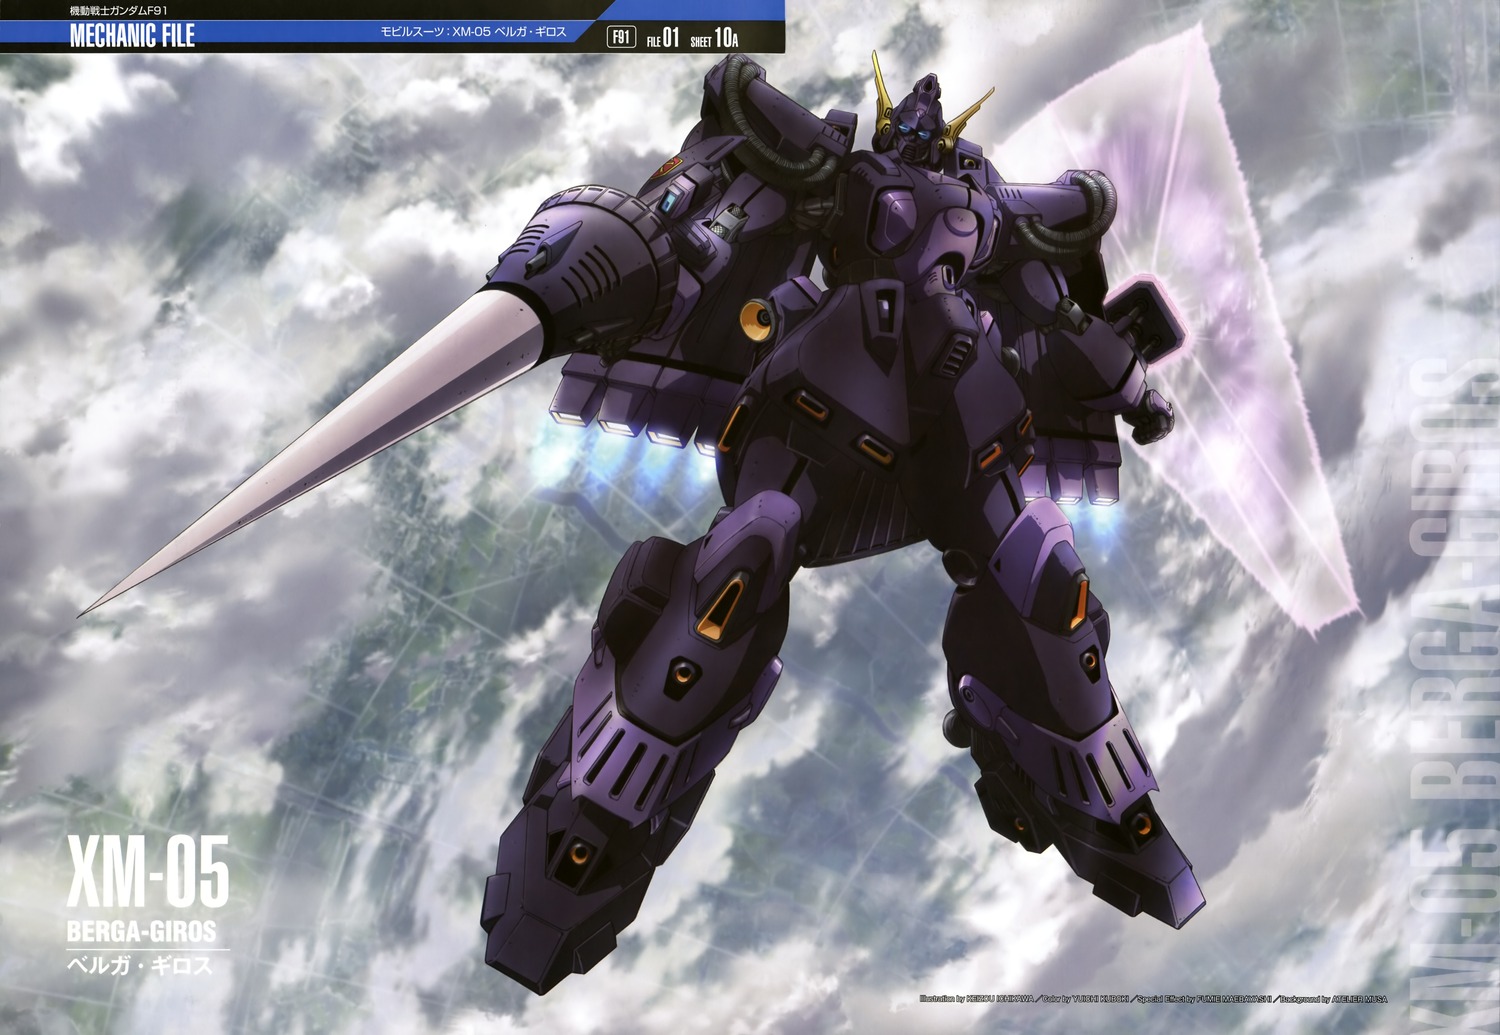 ... GUY: Mobile Suit Gundam Mechanic File - Wallpaper Size Images [Part 6